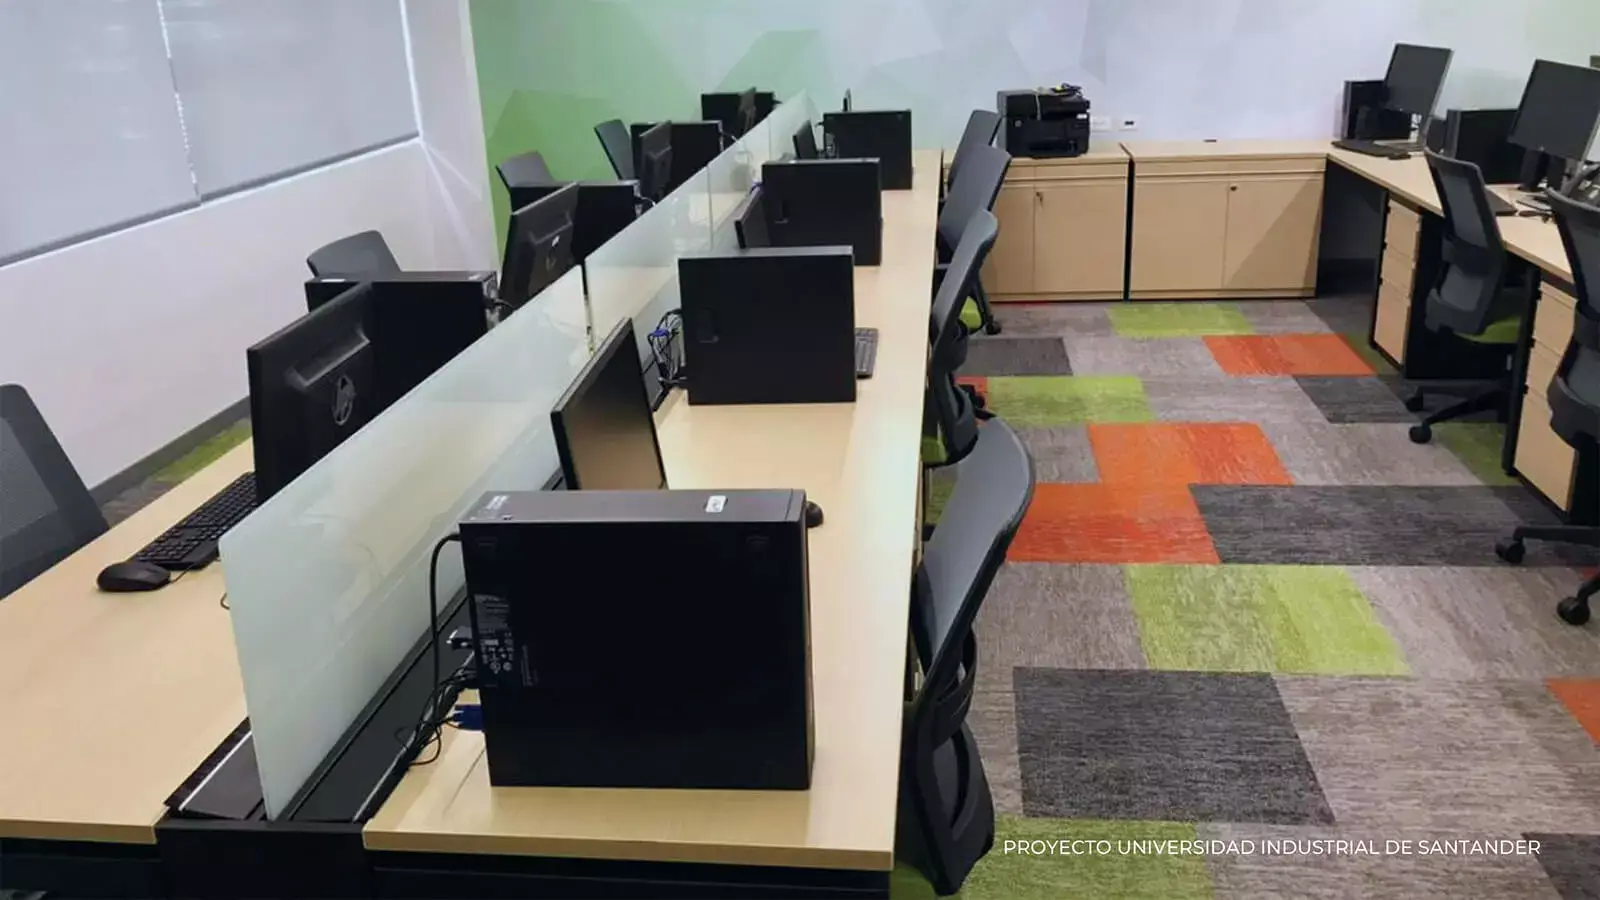 Oficina moderna con múltiples estaciones de trabajo, cada una con una computadora de escritorio y divididas por mamparas verdes, frente a un piso alfombrado de colores.